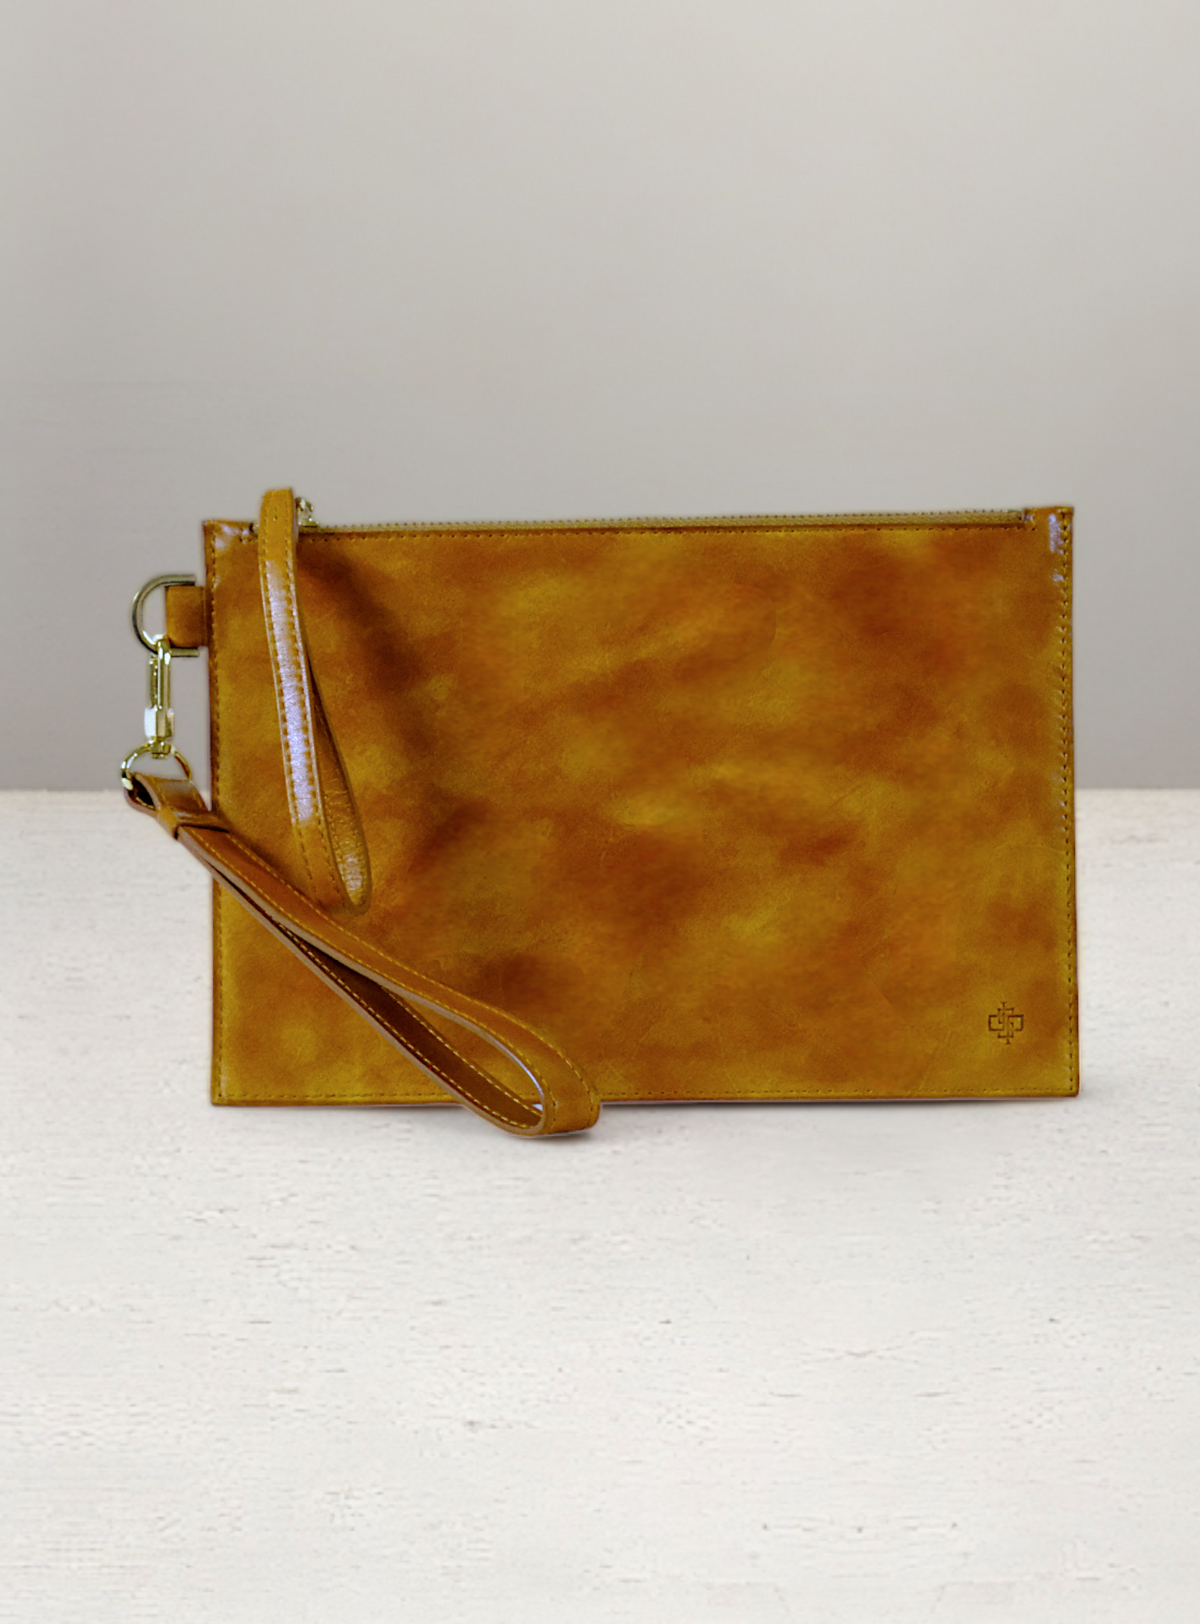 Sisley leather handbags | Leather handbags, Leather, Handbag shopping